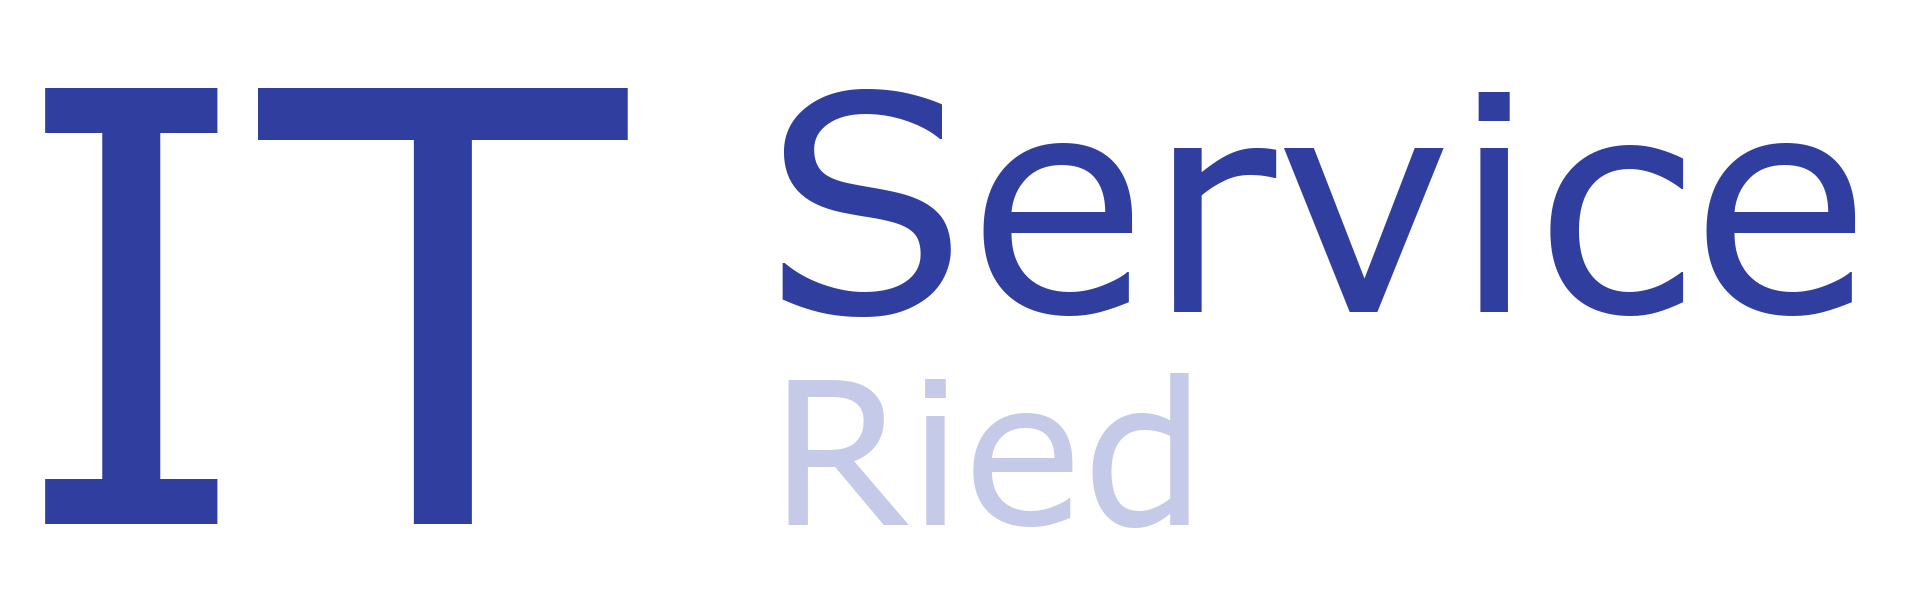 IT Service Ried logo